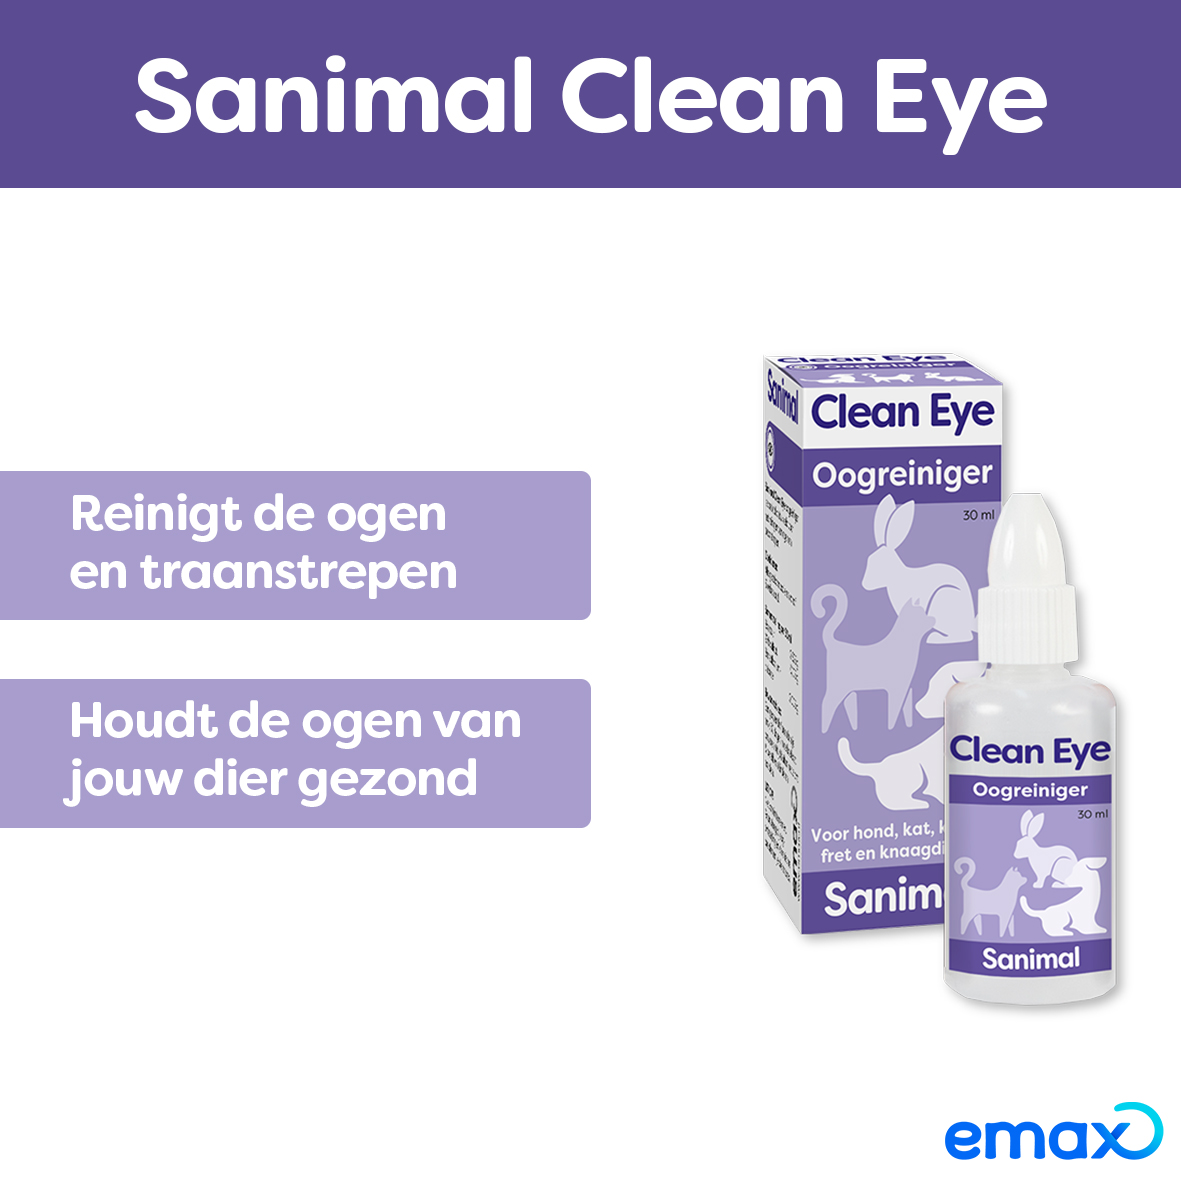 Sanimal Clean Eye Oogreiniger voor hond, kat, konijn en knaagdieren - Emax.nl